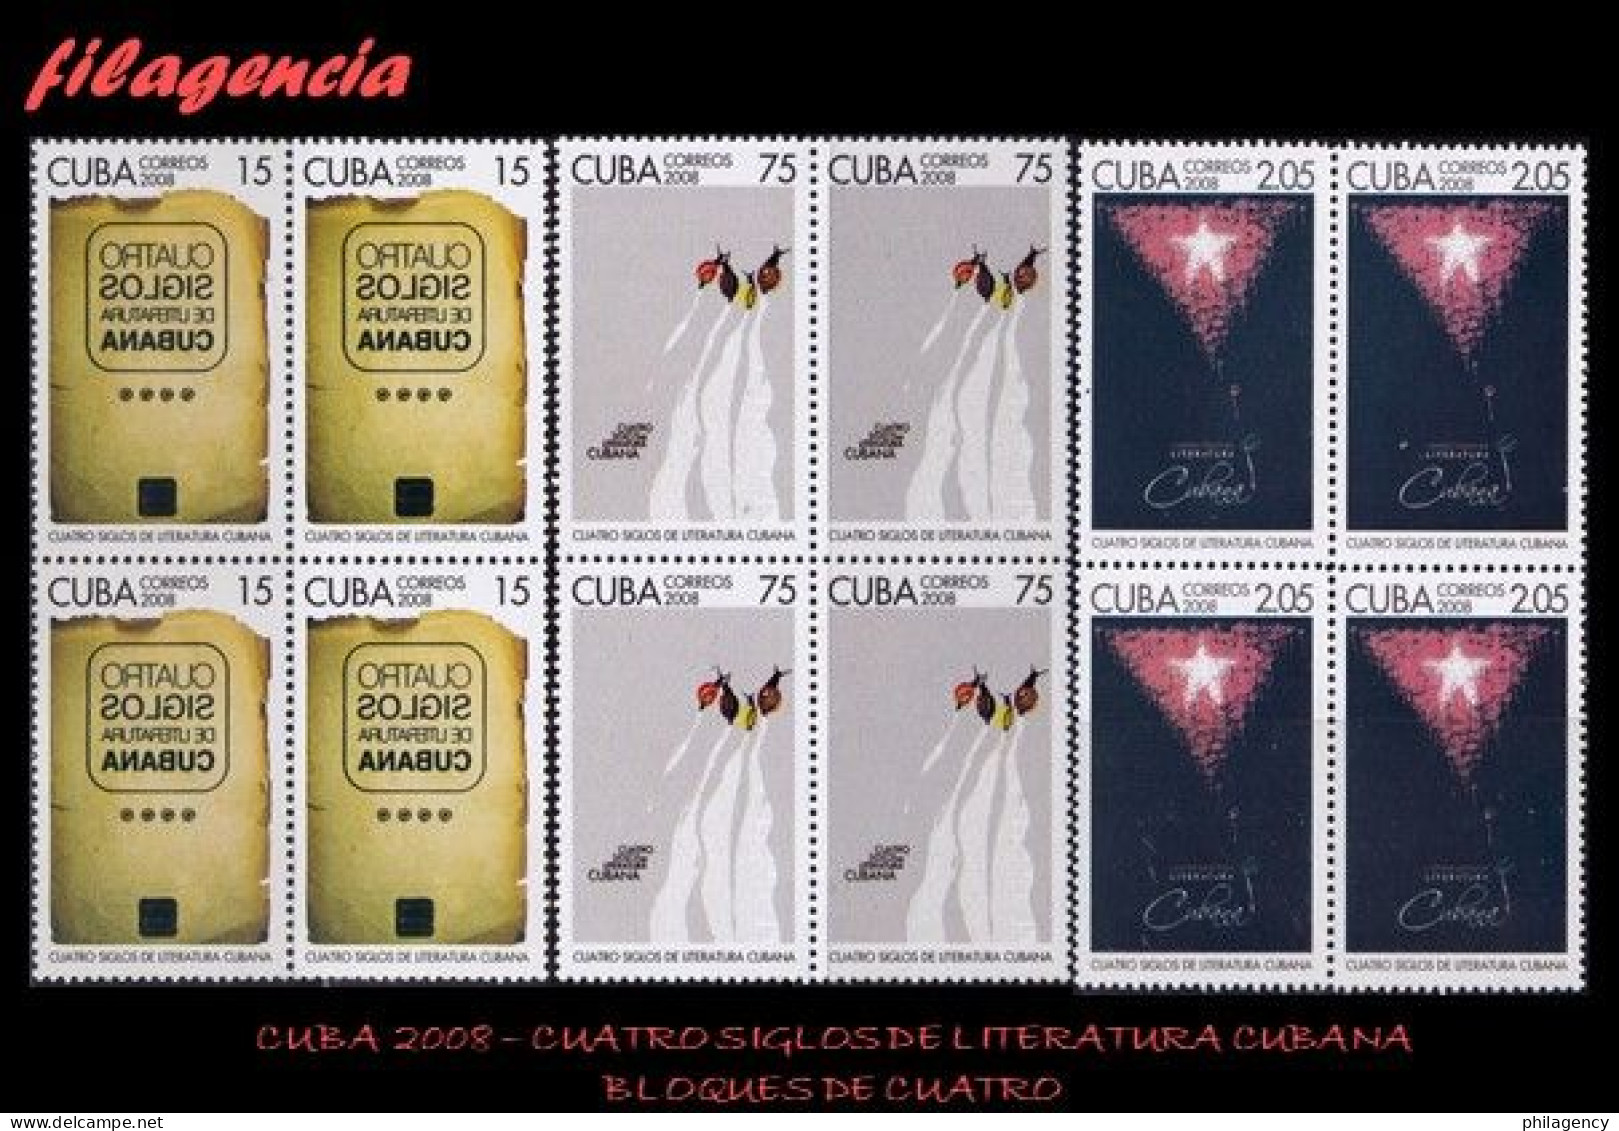 CUBA. BLOQUES DE CUATRO. 2008-28 CUATRO SIGLOS DE LITERATURA CUBANA - Ungebraucht